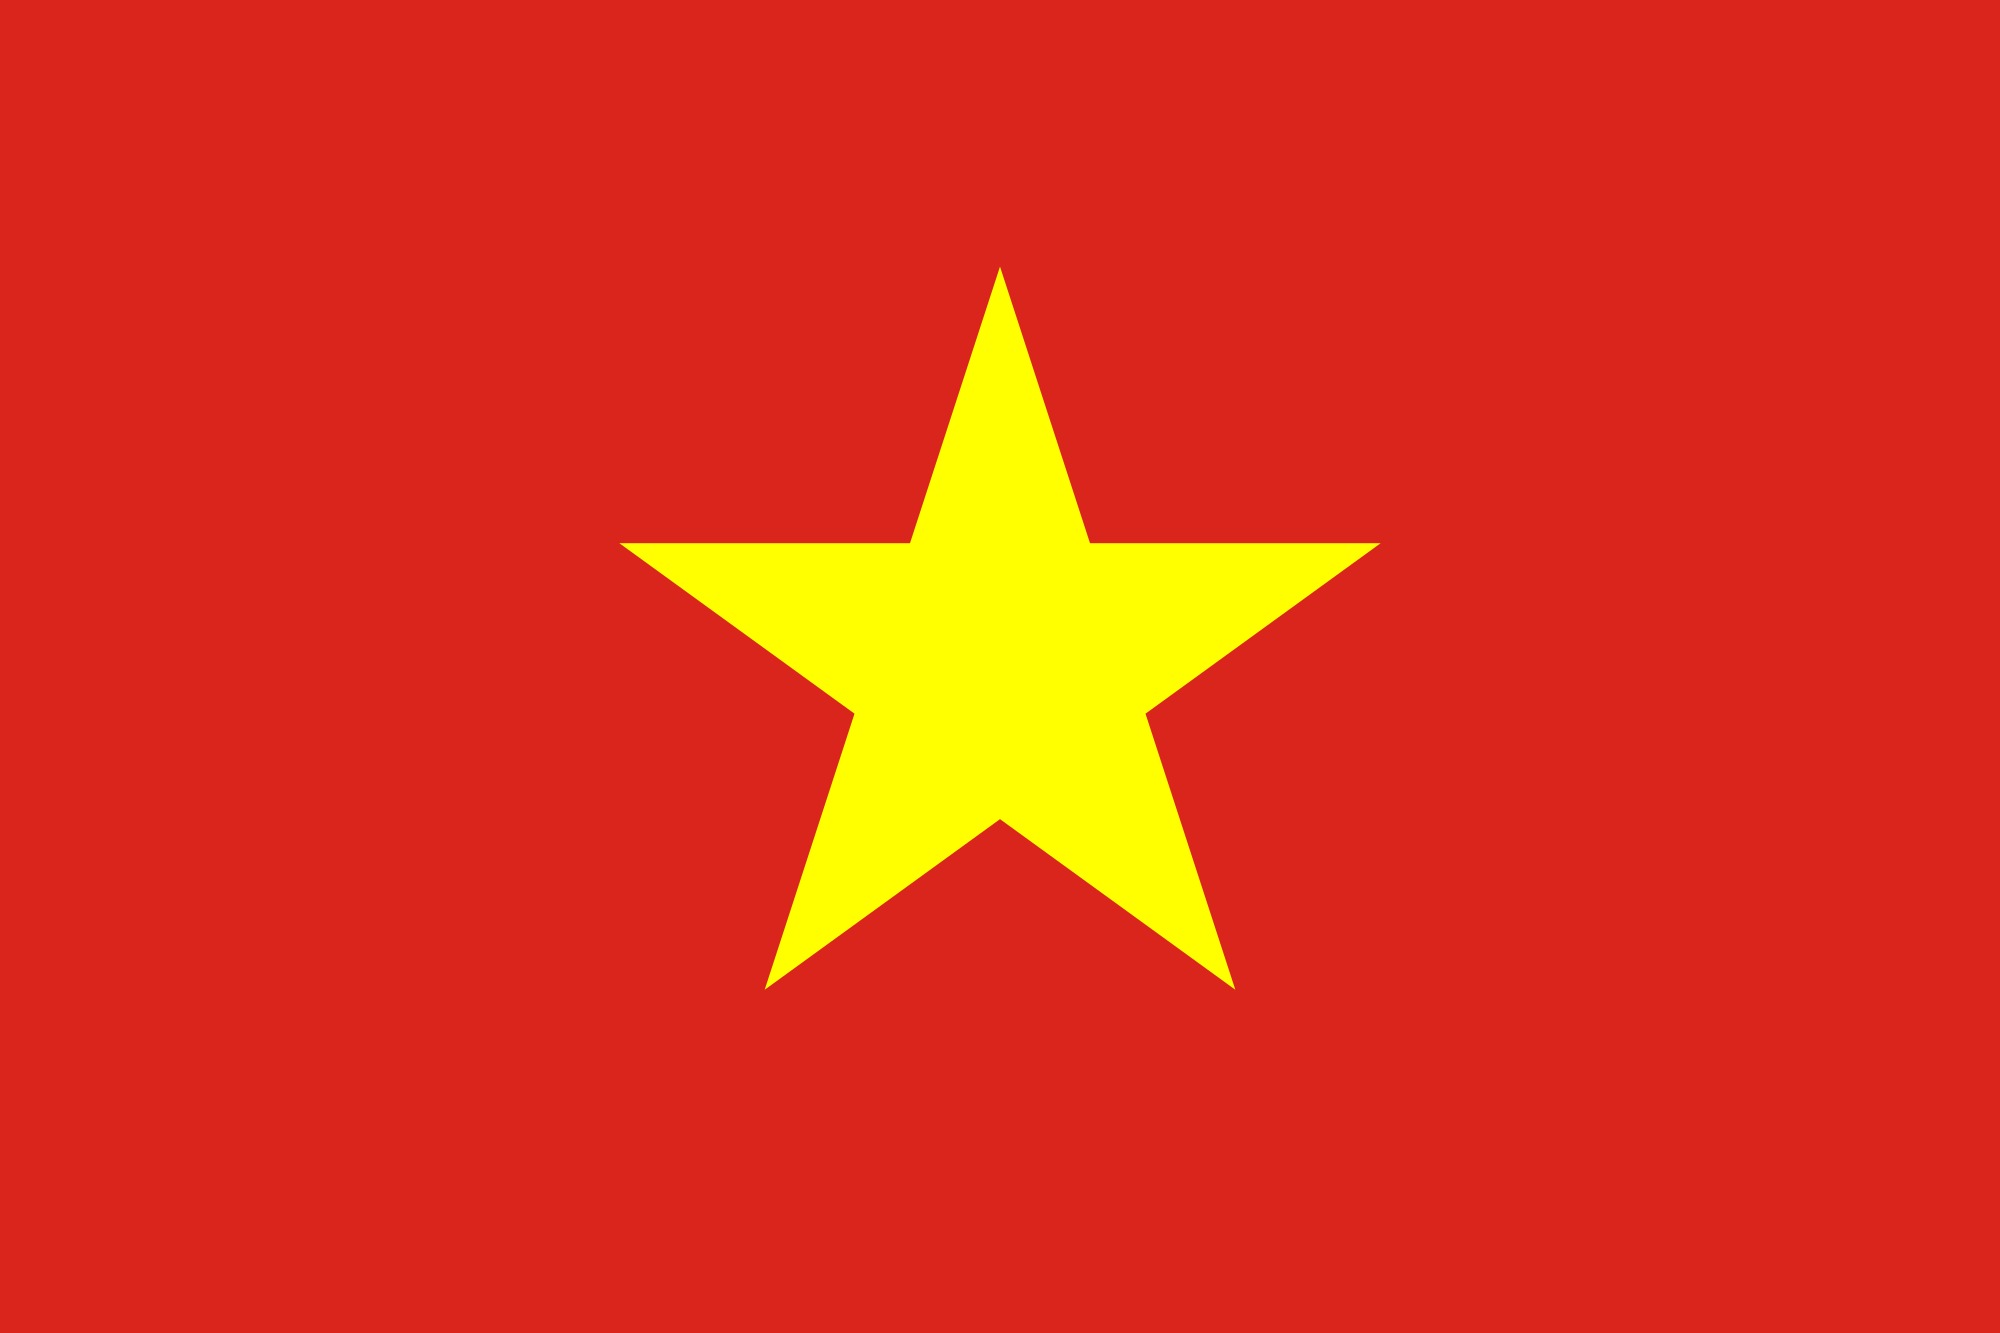 Ý nghĩa lá quốc kỳ Việt Nam: Lá quốc kỳ Việt Nam là biểu tượng quốc gia của đất nước ta. Cờ gồm ba sọc ngang màu đỏ, màu vàng, màu đỏ biểu thị cho sự can đảm, chăm chỉ và nghĩa trang của dân tộc. Bên cạnh đó, trên sọc màu vàng có hình sao vàng, là biểu tượng của chủ quyền và độc lập, thể hiện chính khí của quốc gia. Hãy cùng chiêm ngưỡng tuyệt đẹp của lá cờ quốc kỳ Việt Nam qua hình ảnh đẹp mắt này.